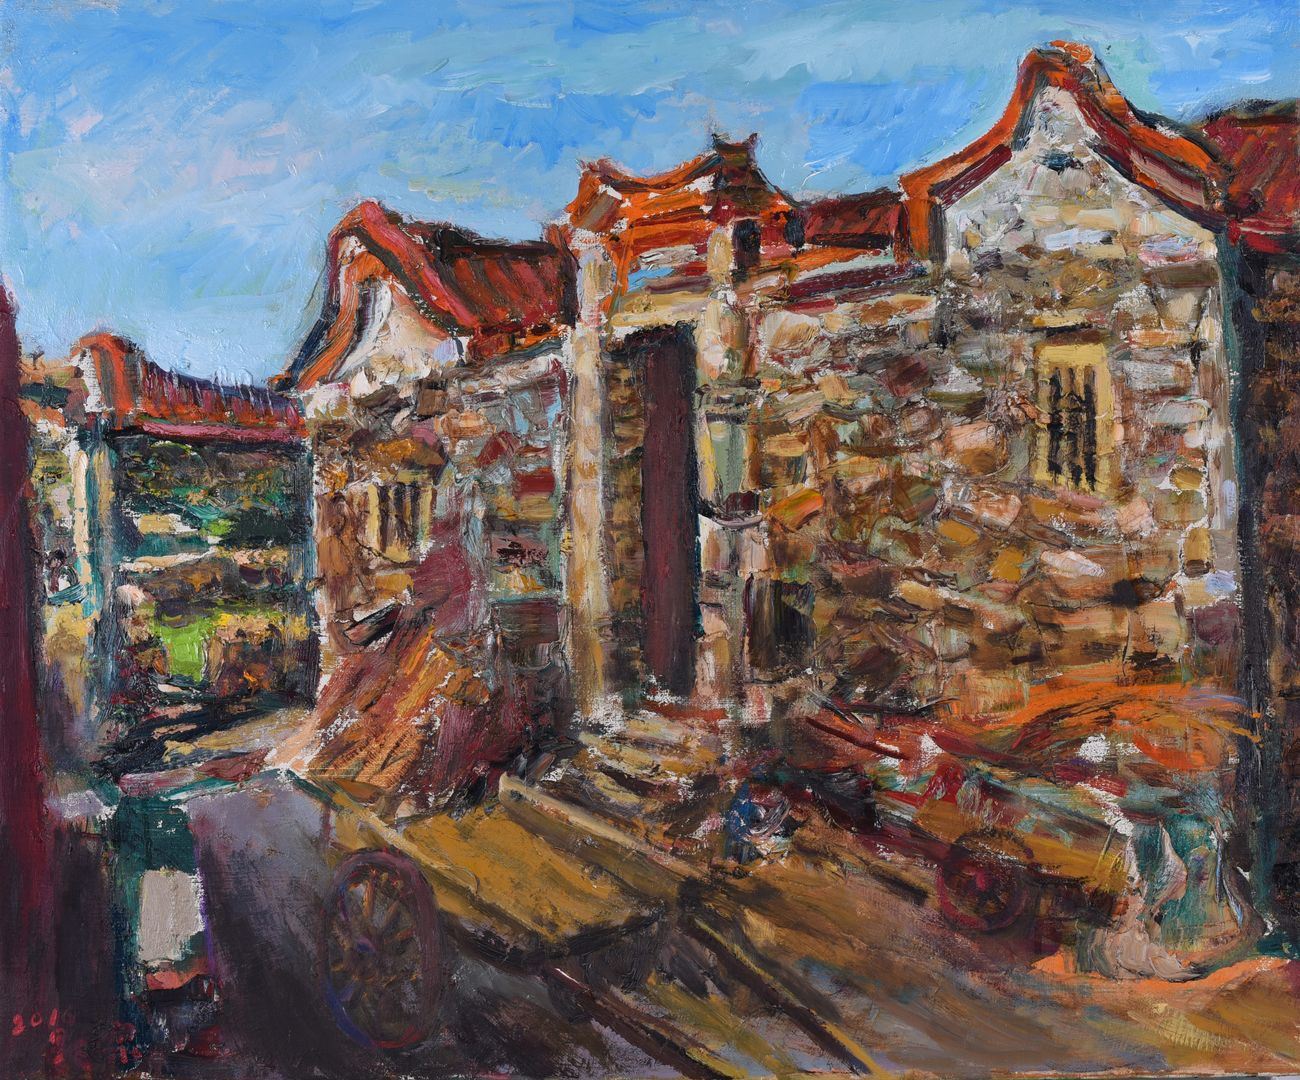 澎湖農莊-60.5×72.5cm 油彩、畫布 2016